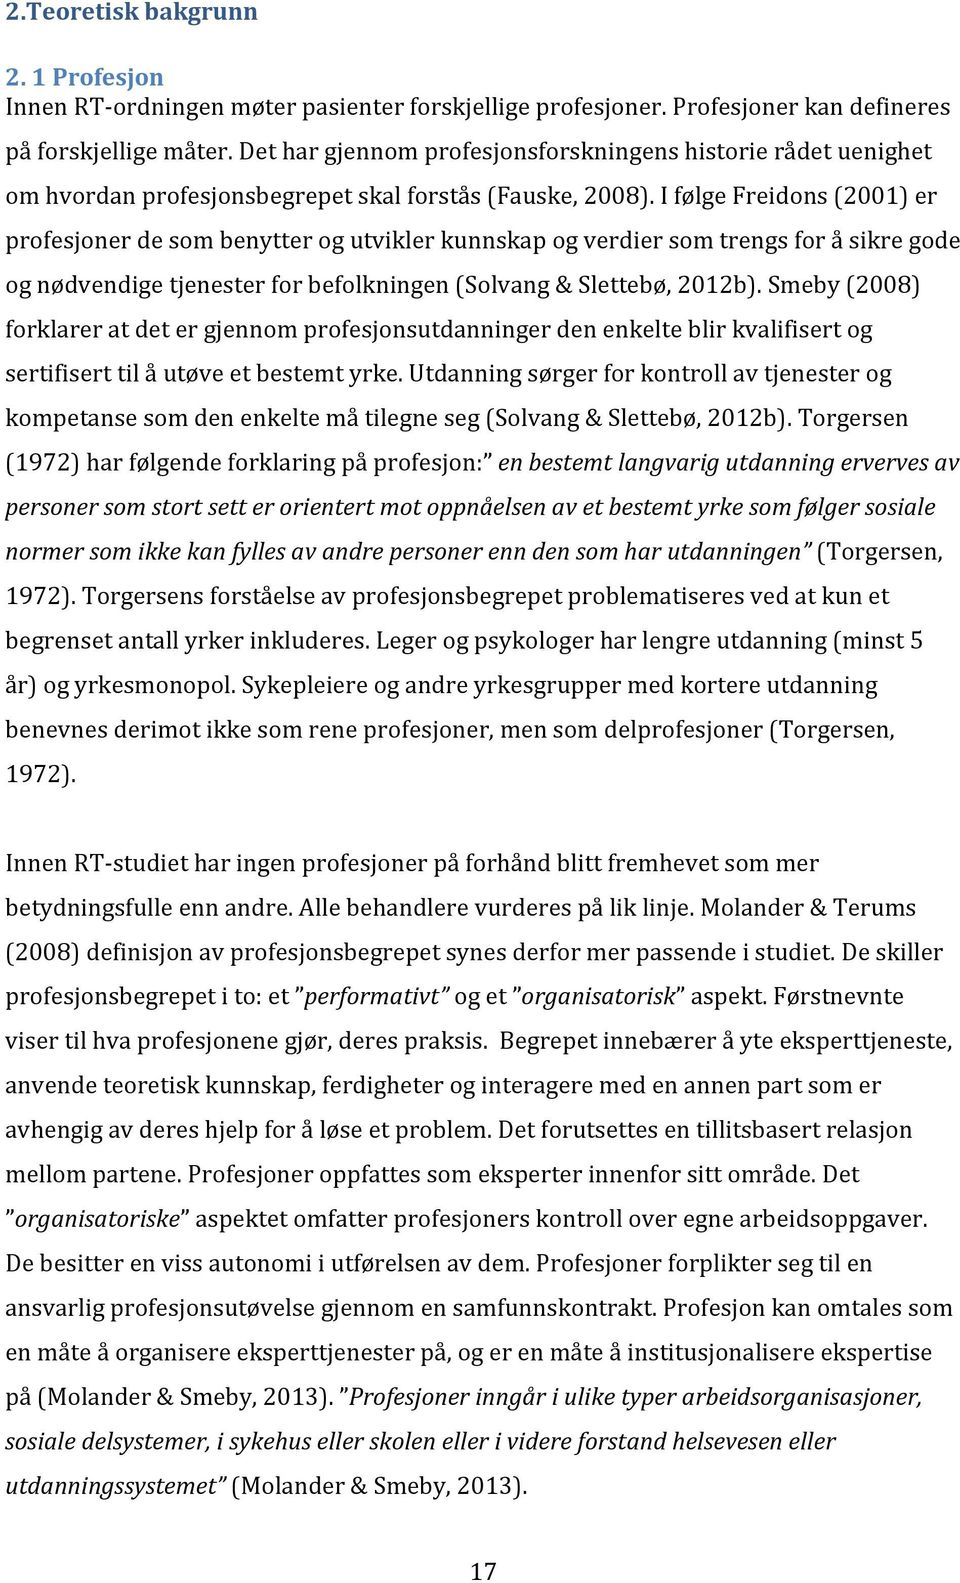 ifølgefreidons2001)er profesjonerdesombenytterogutviklerkunnskapogverdiersomtrengsforåsikregode ognødvendigetjenesterforbefolkningensolvang&slettebø,2012b).